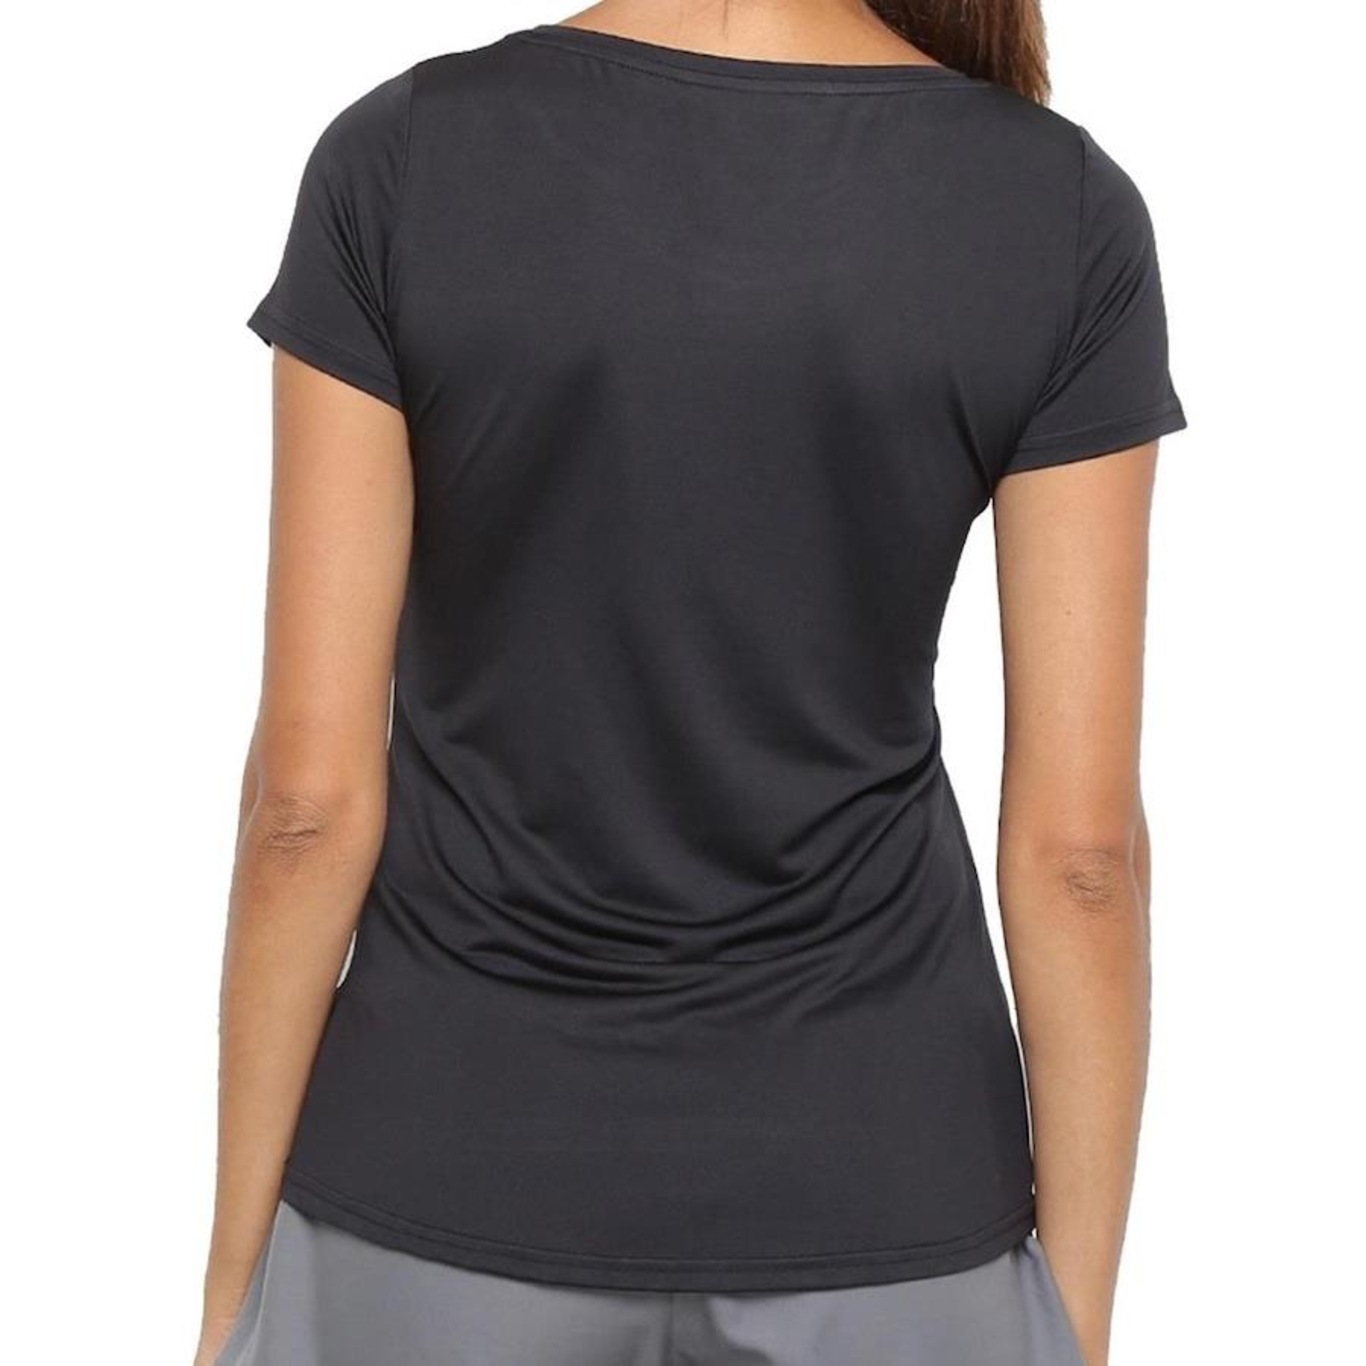 Camiseta Regata Speedo Plus UV50 - Feminina